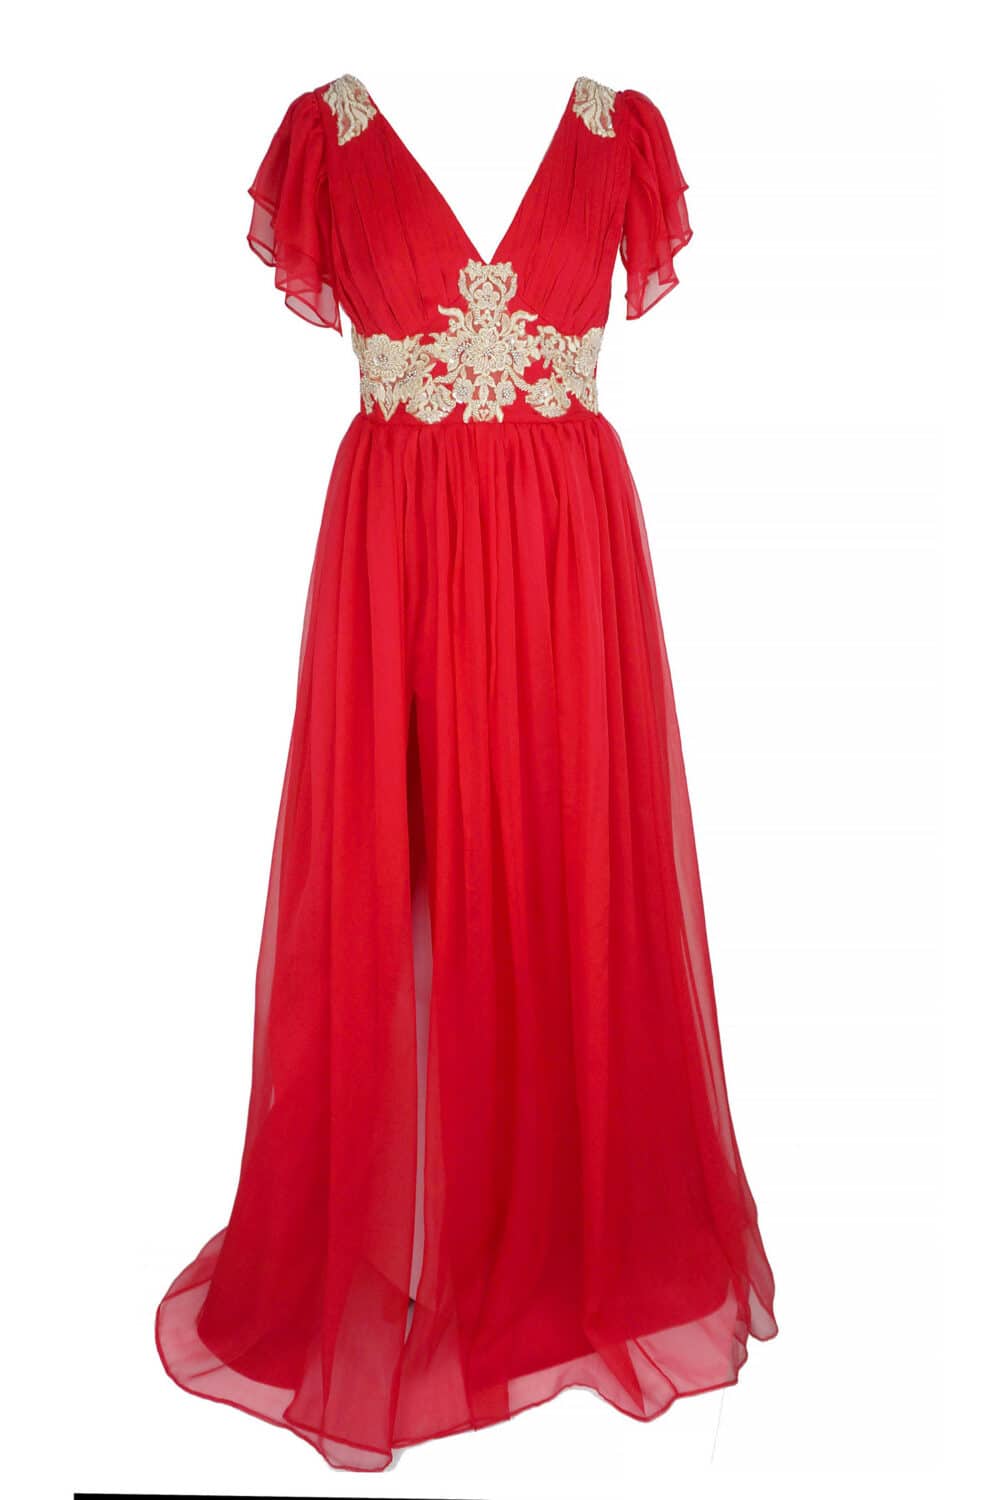 Rochie lungă de seară JACQUELINE din mătase naturală roșie și broderie auriu deschis